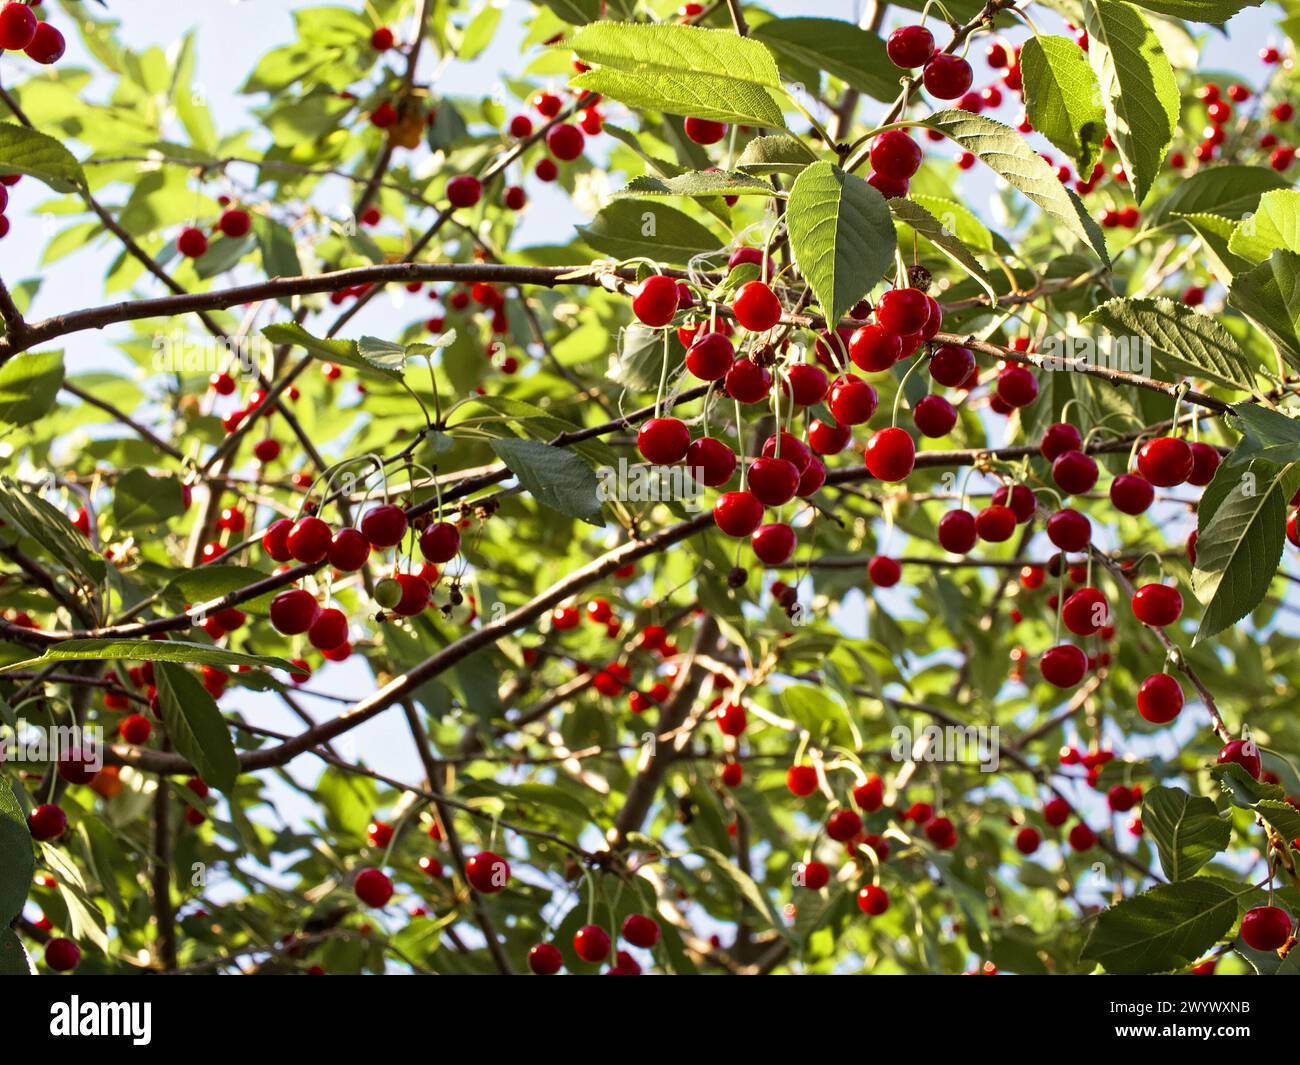 Le ciliegie rosse brillanti si staccano dai loro steli in mezzo a una lussureggiante vegetazione, catturando l'essenza di una stagione di raccolta fruttuosa. Foto Stock